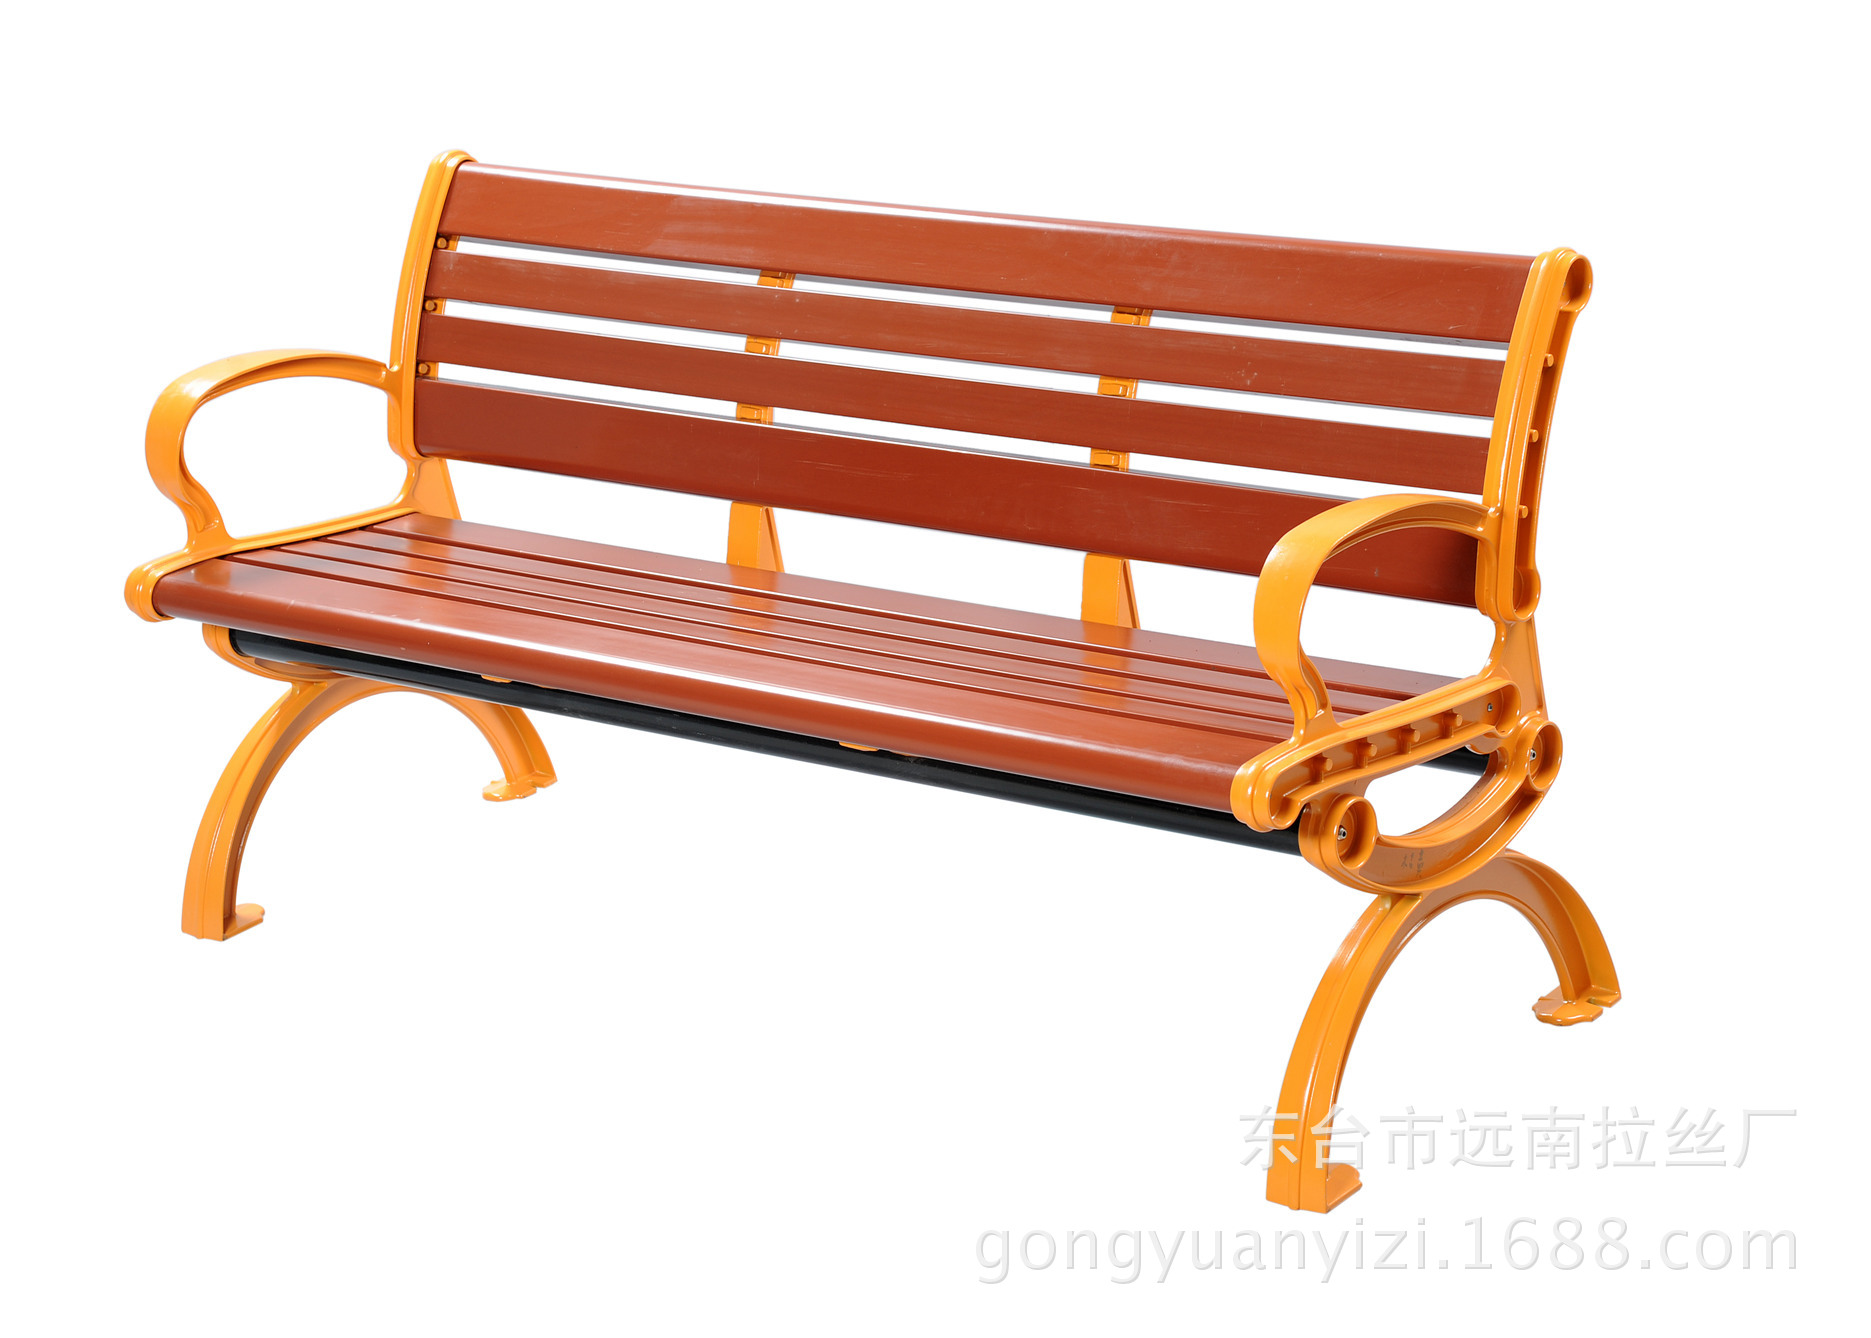 厂家直销塑木园林椅,塑木公园休闲椅, 塑木看台坐椅,欢迎订购